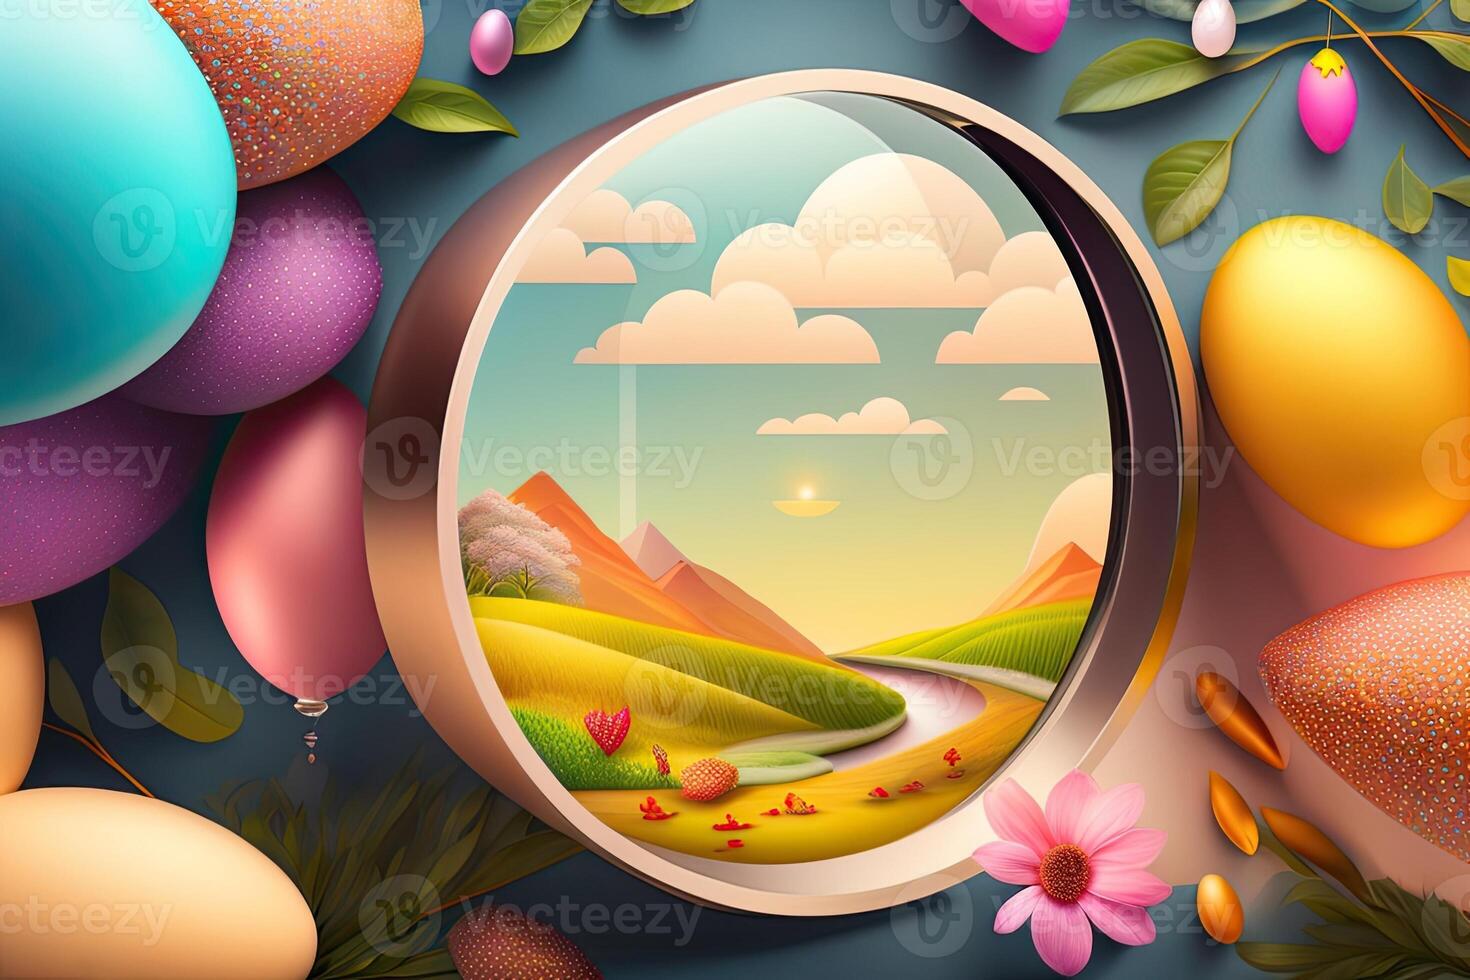 Easter Holiday Background Illustration. photo